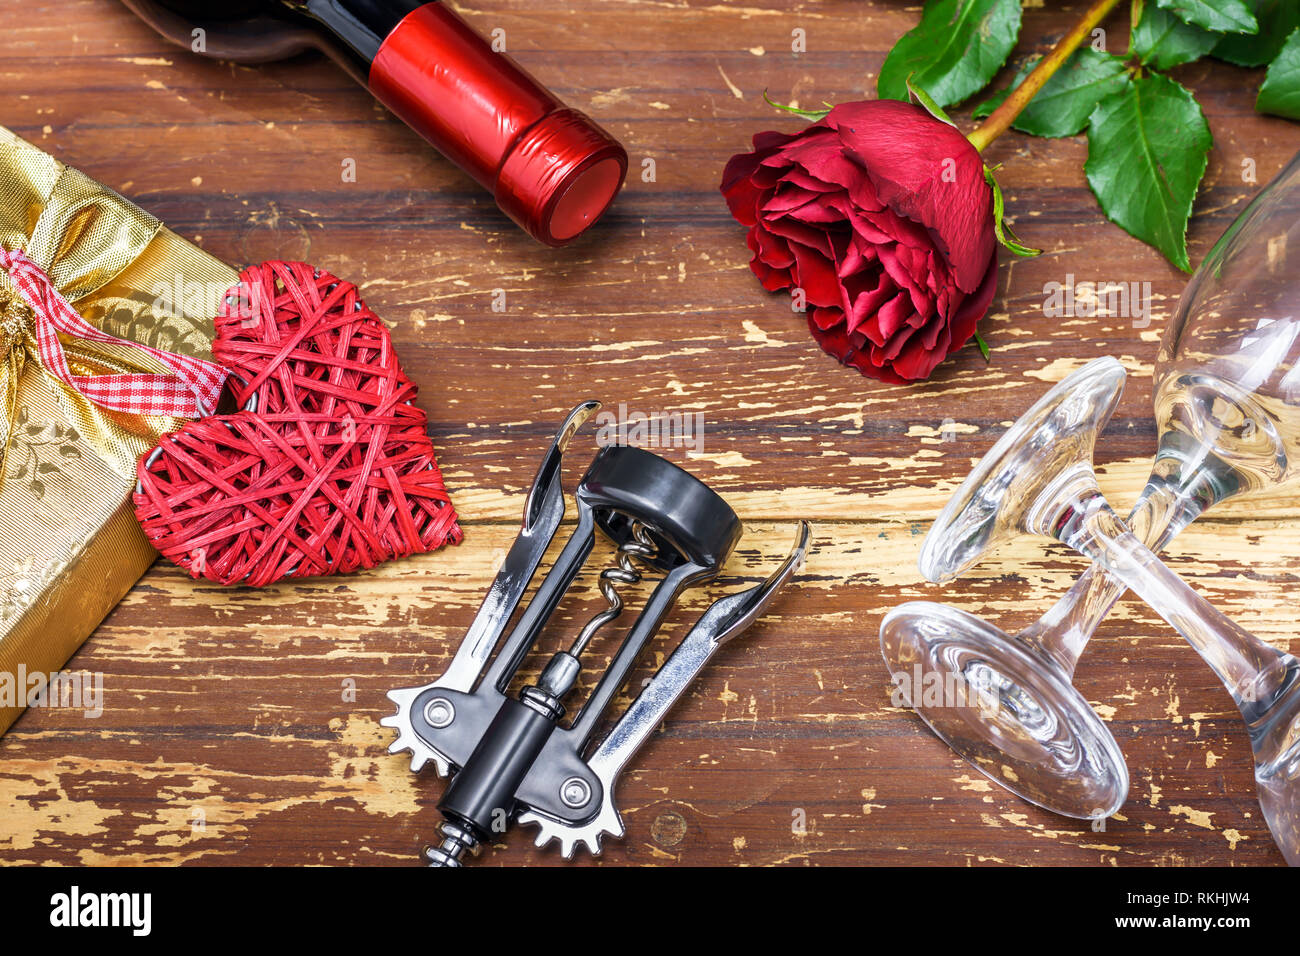 Il giorno di San Valentino del concetto. Bottiglia di vino, cuore di vimini, confezione regalo rose rosse, cavatappi e bicchieri di vino sulla lavagna in legno. Foto Stock